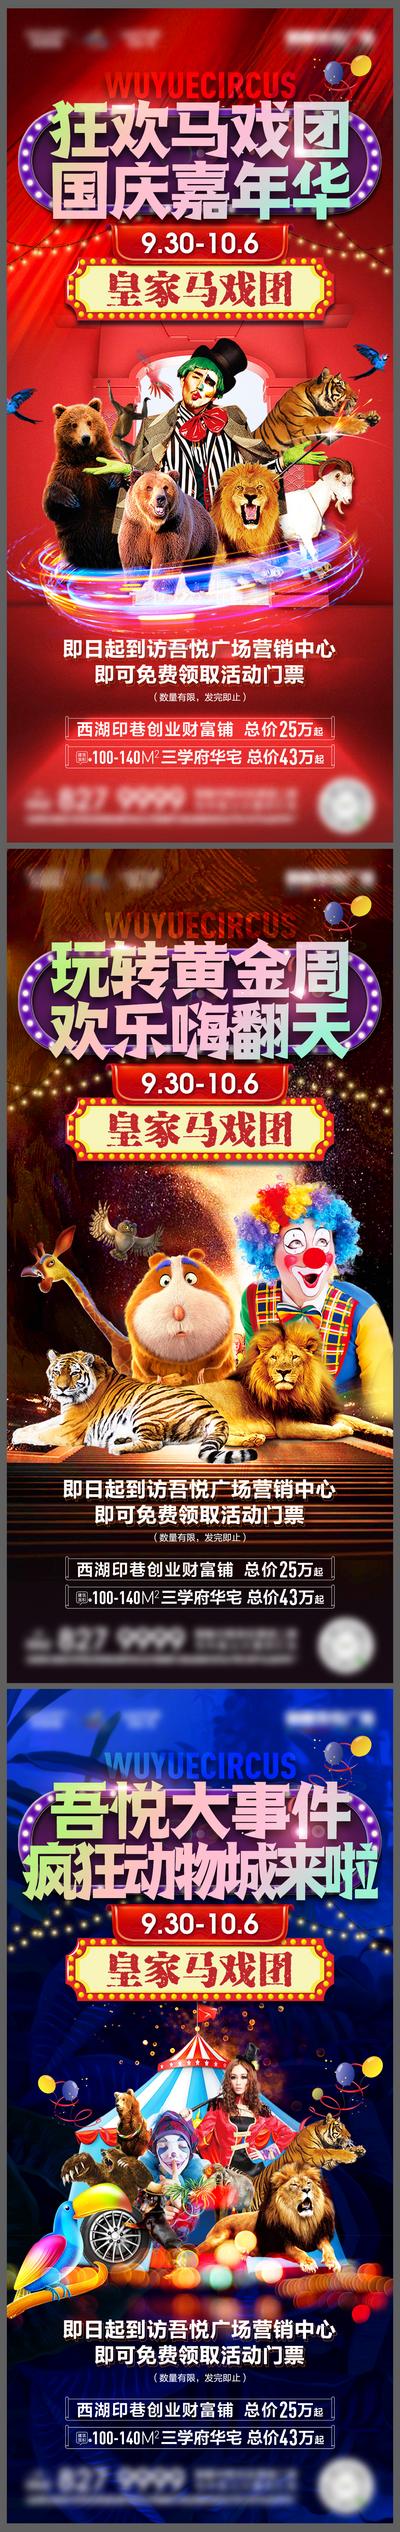 南门网 海报 地产 活动 国庆 嘉年华 马戏团 小丑 表演 系列